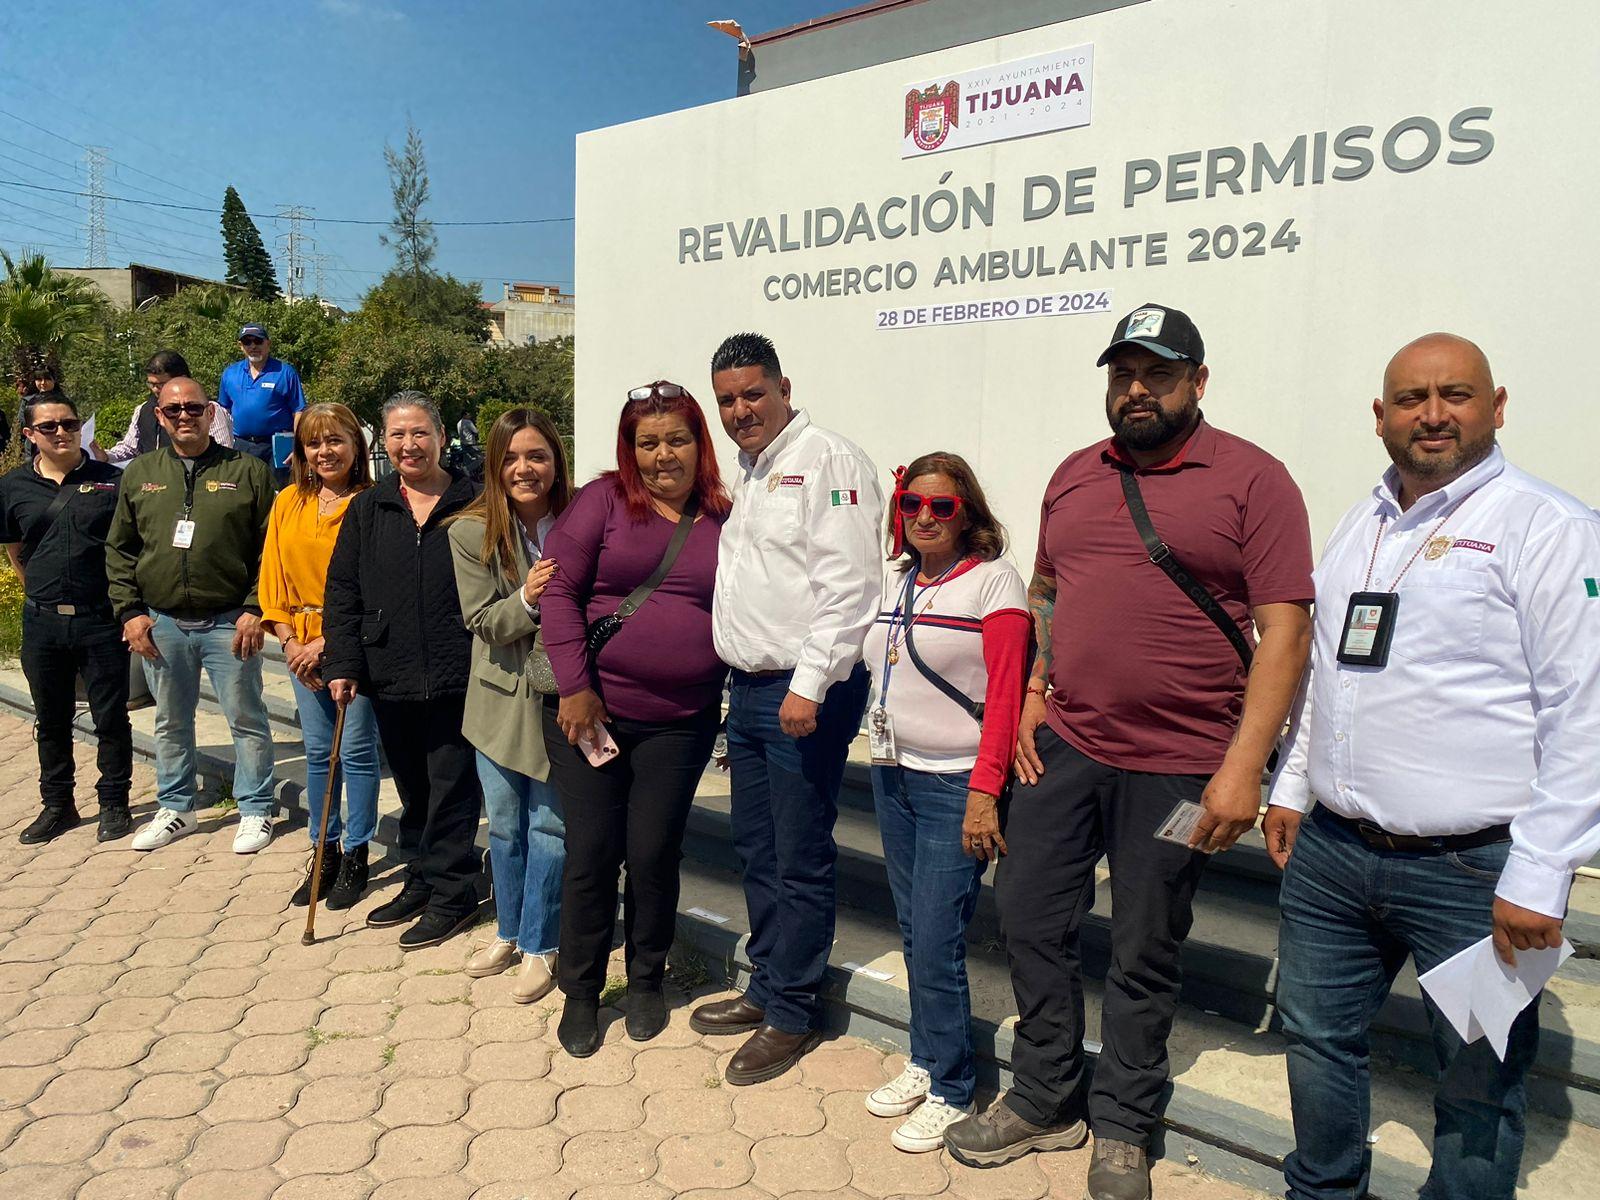 Apoya Ayuntamiento de Tijuana a 400 comerciantes con revalidación y entrega de permisos